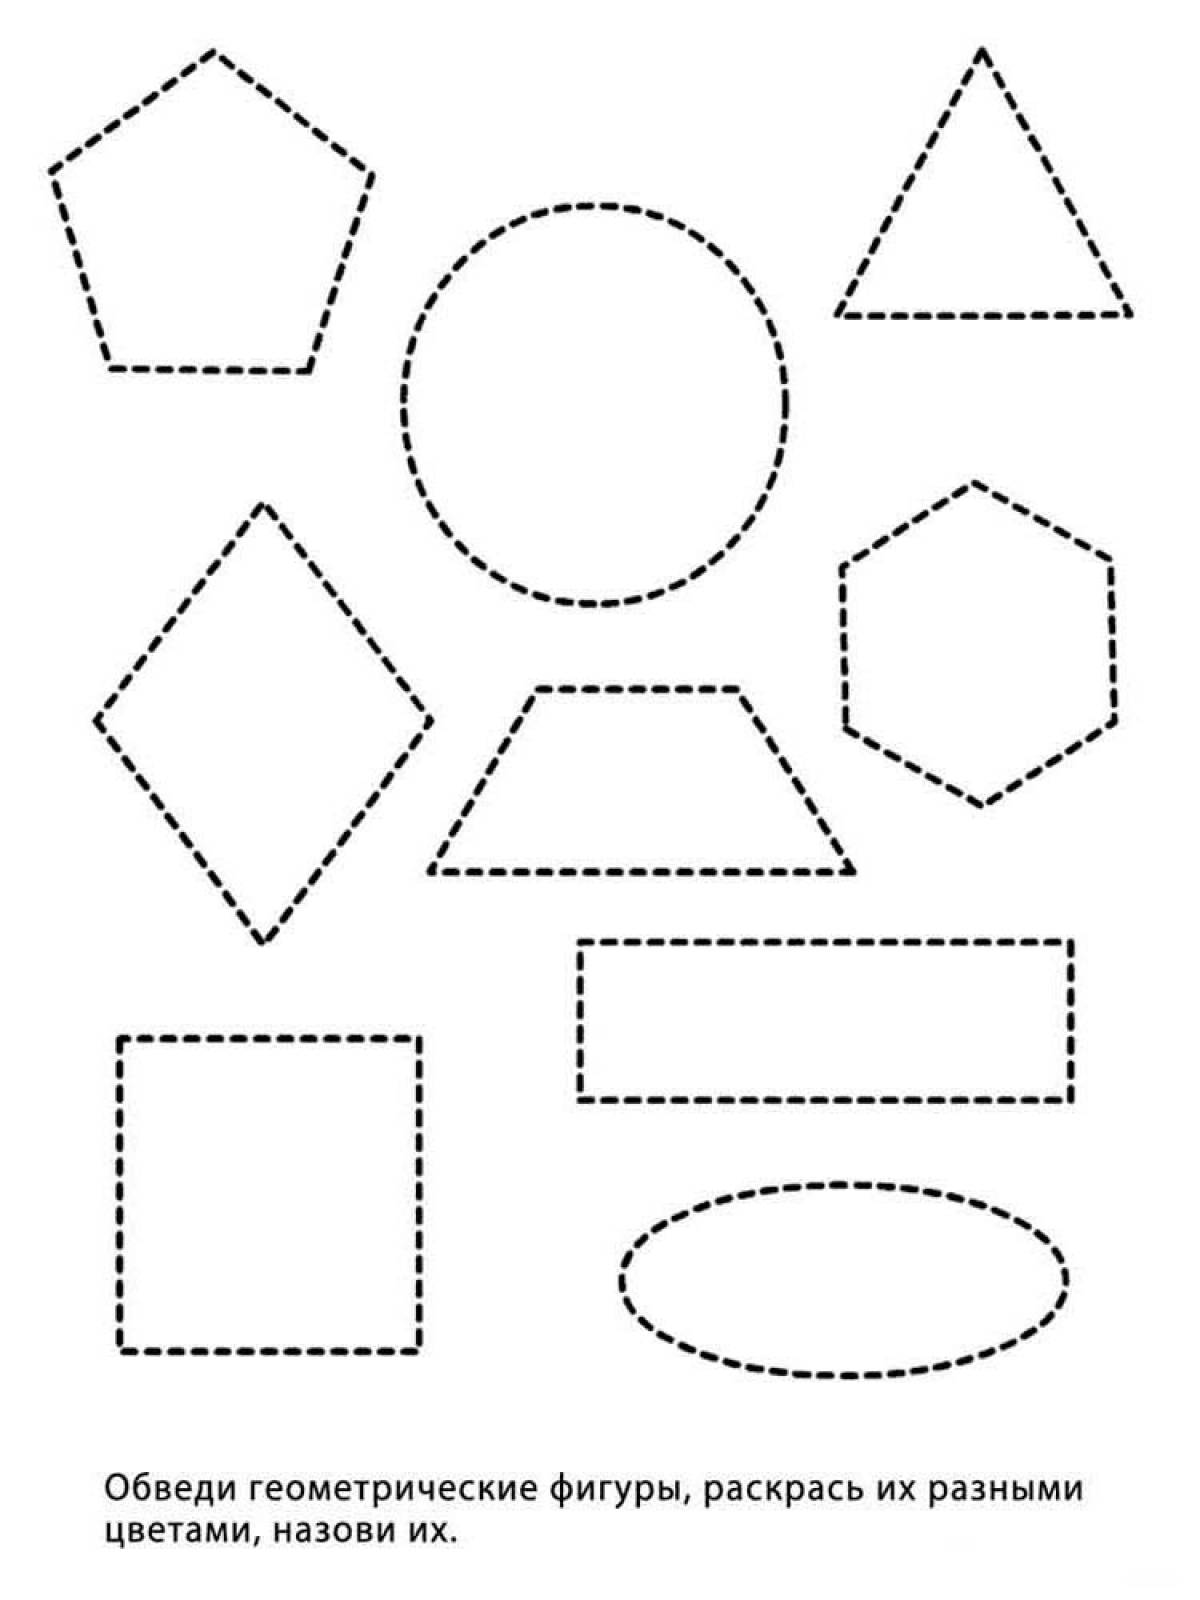 Обведи геометрические фигуры для детей 4-5 лет